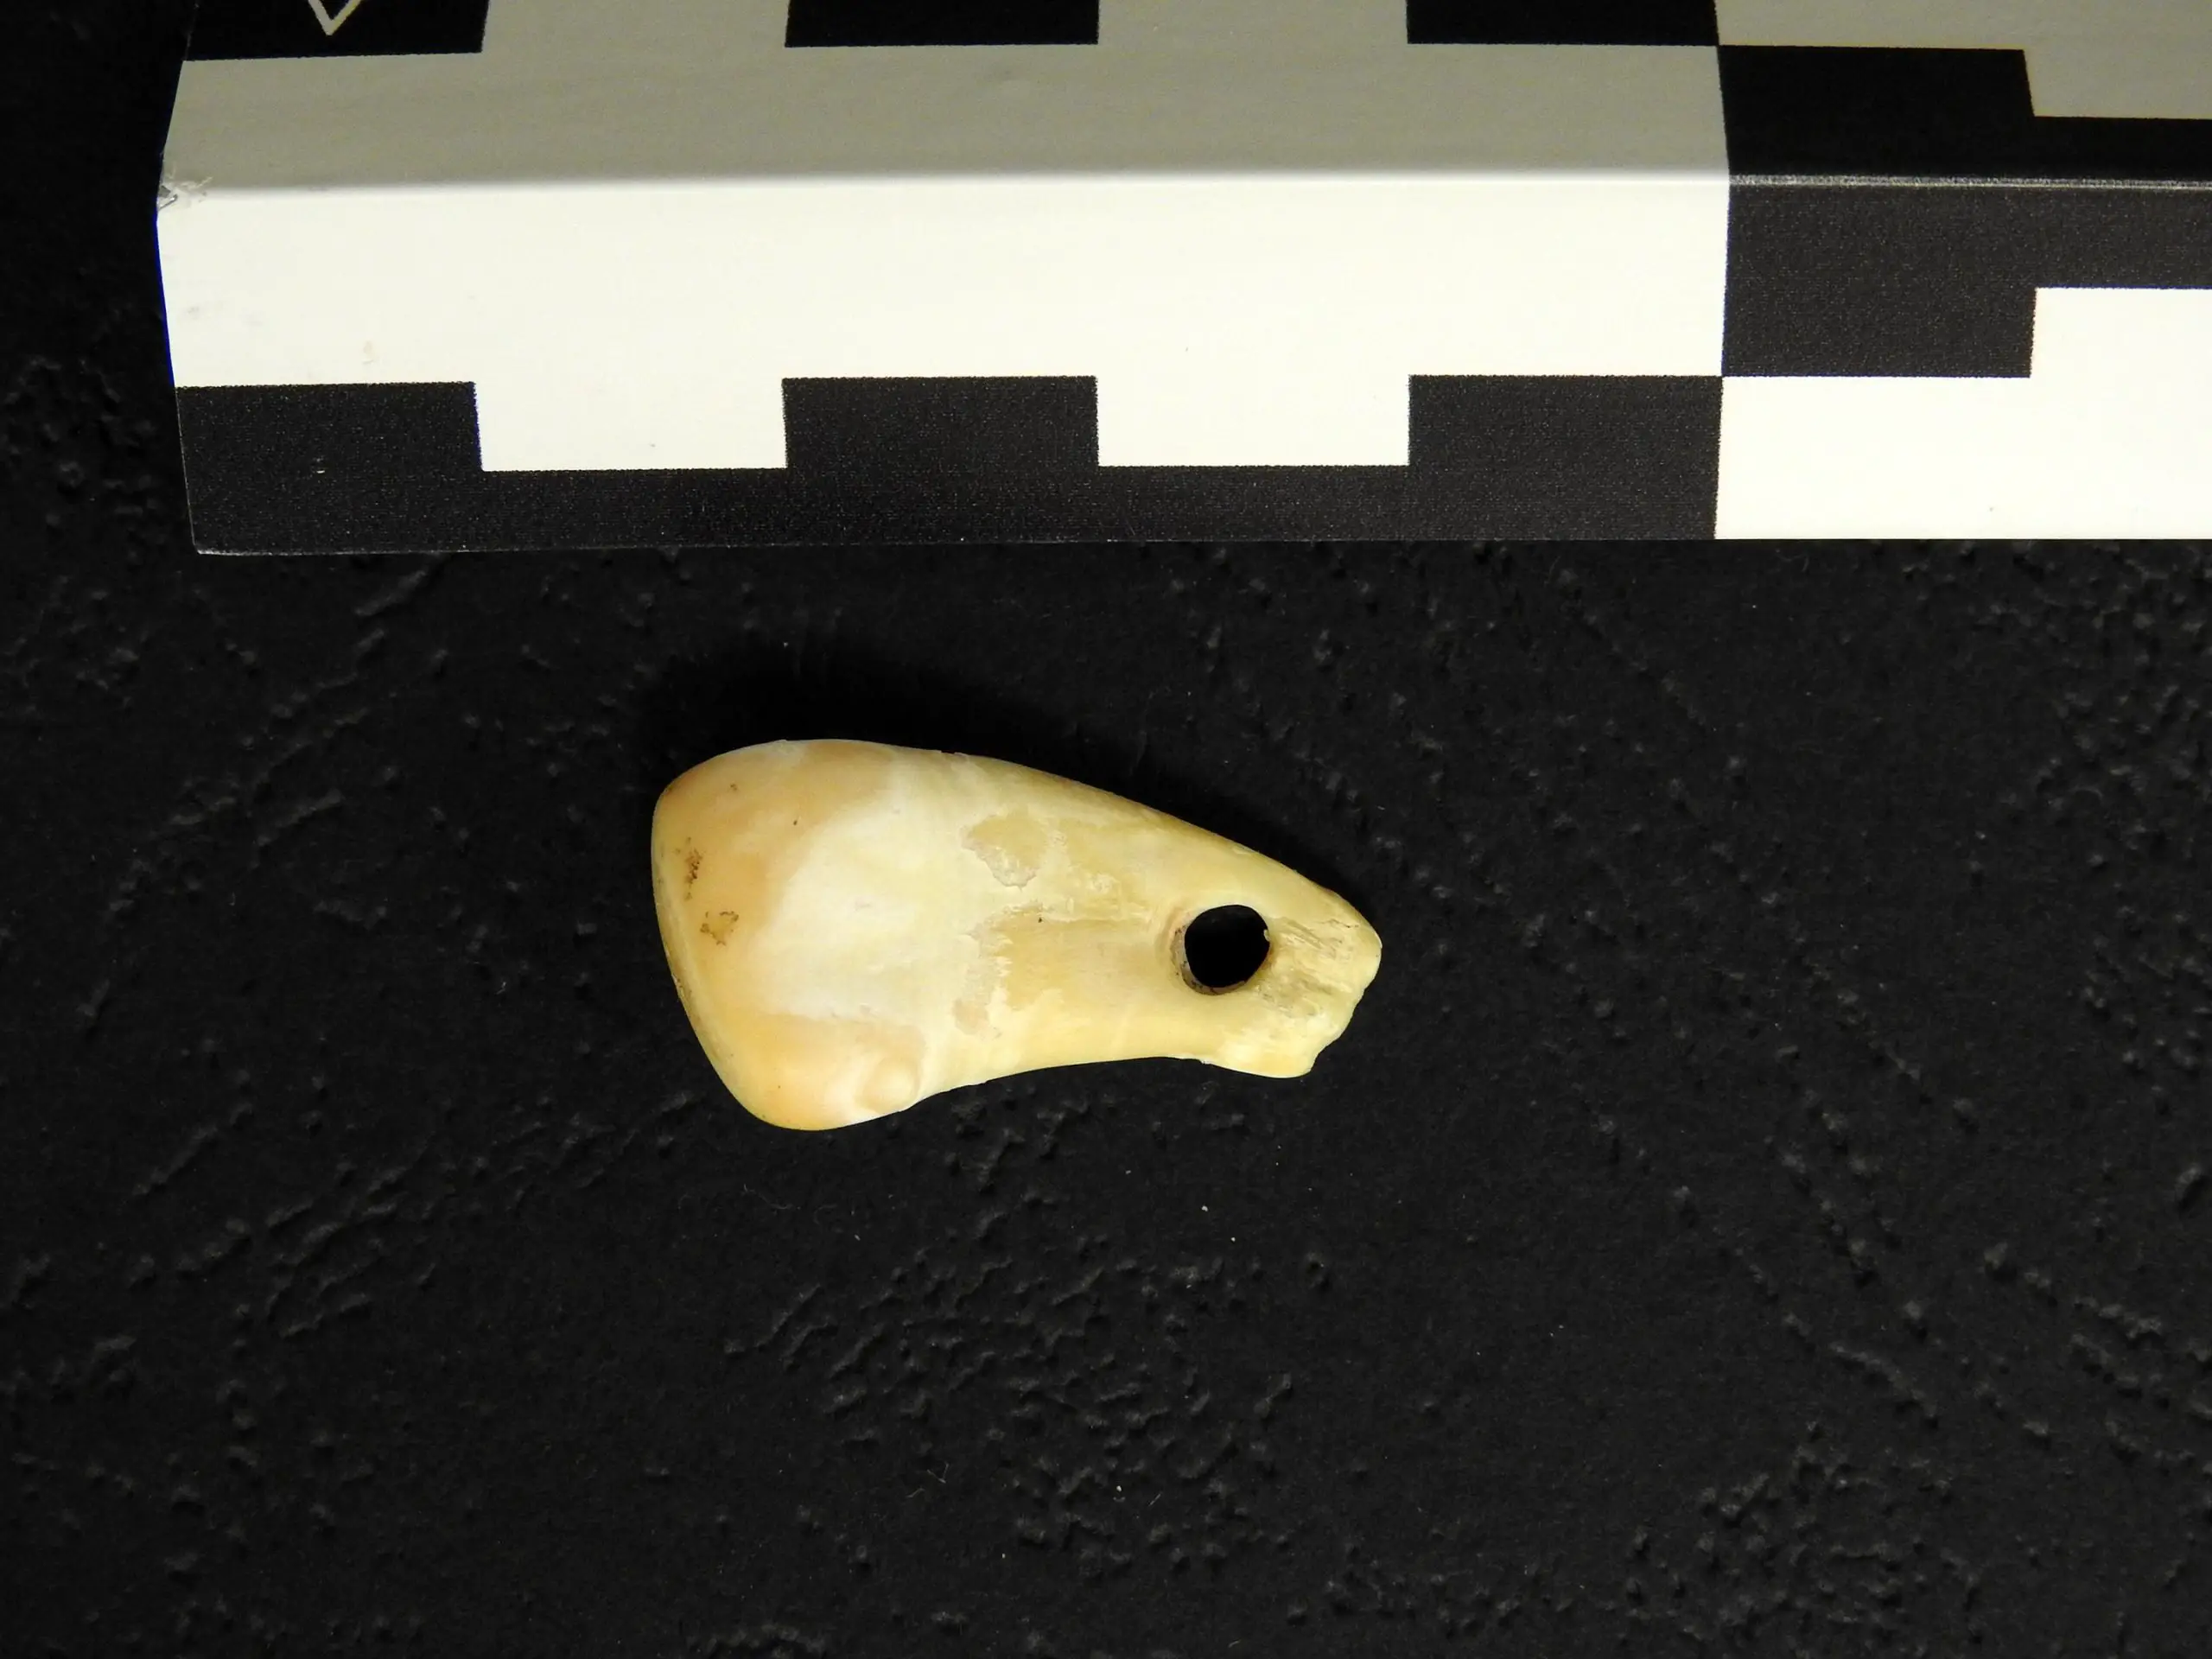 Досліджуваний зуб був знайдений російськими археологами у 2019 році в Денисовій печері. MPI для еволюційної антропології